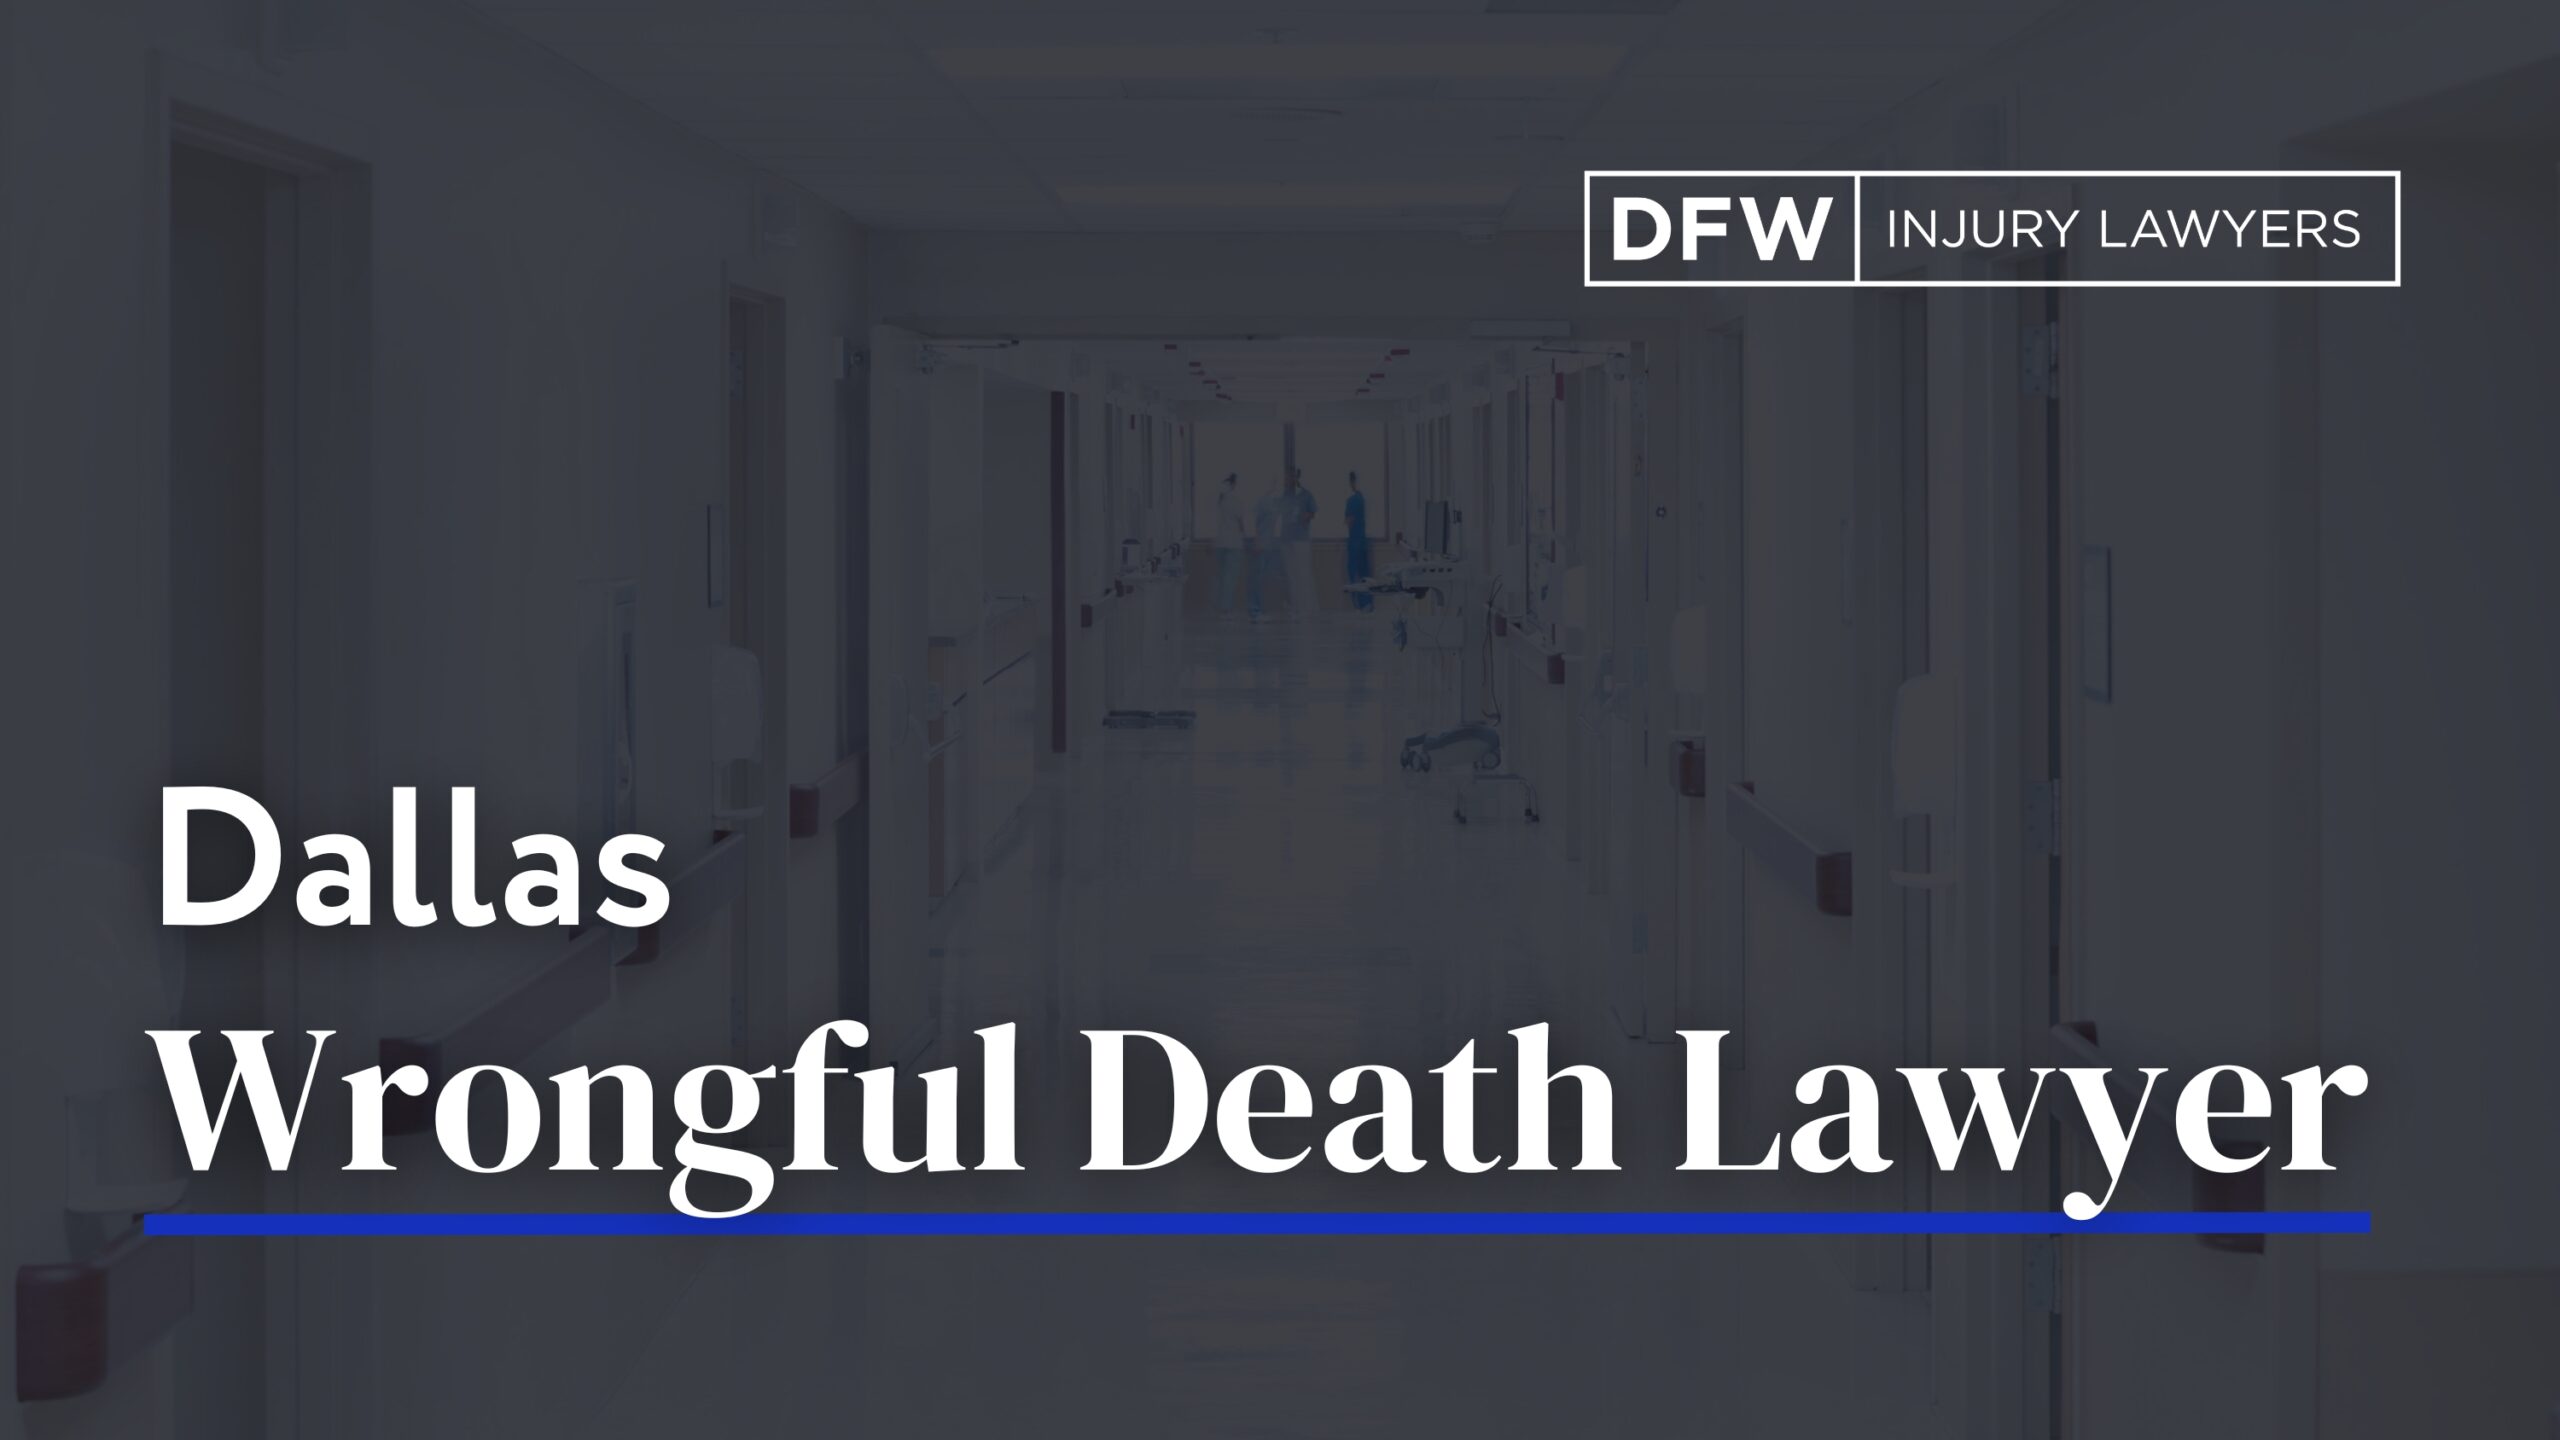 Dallas wrongful death lawyer - DFW